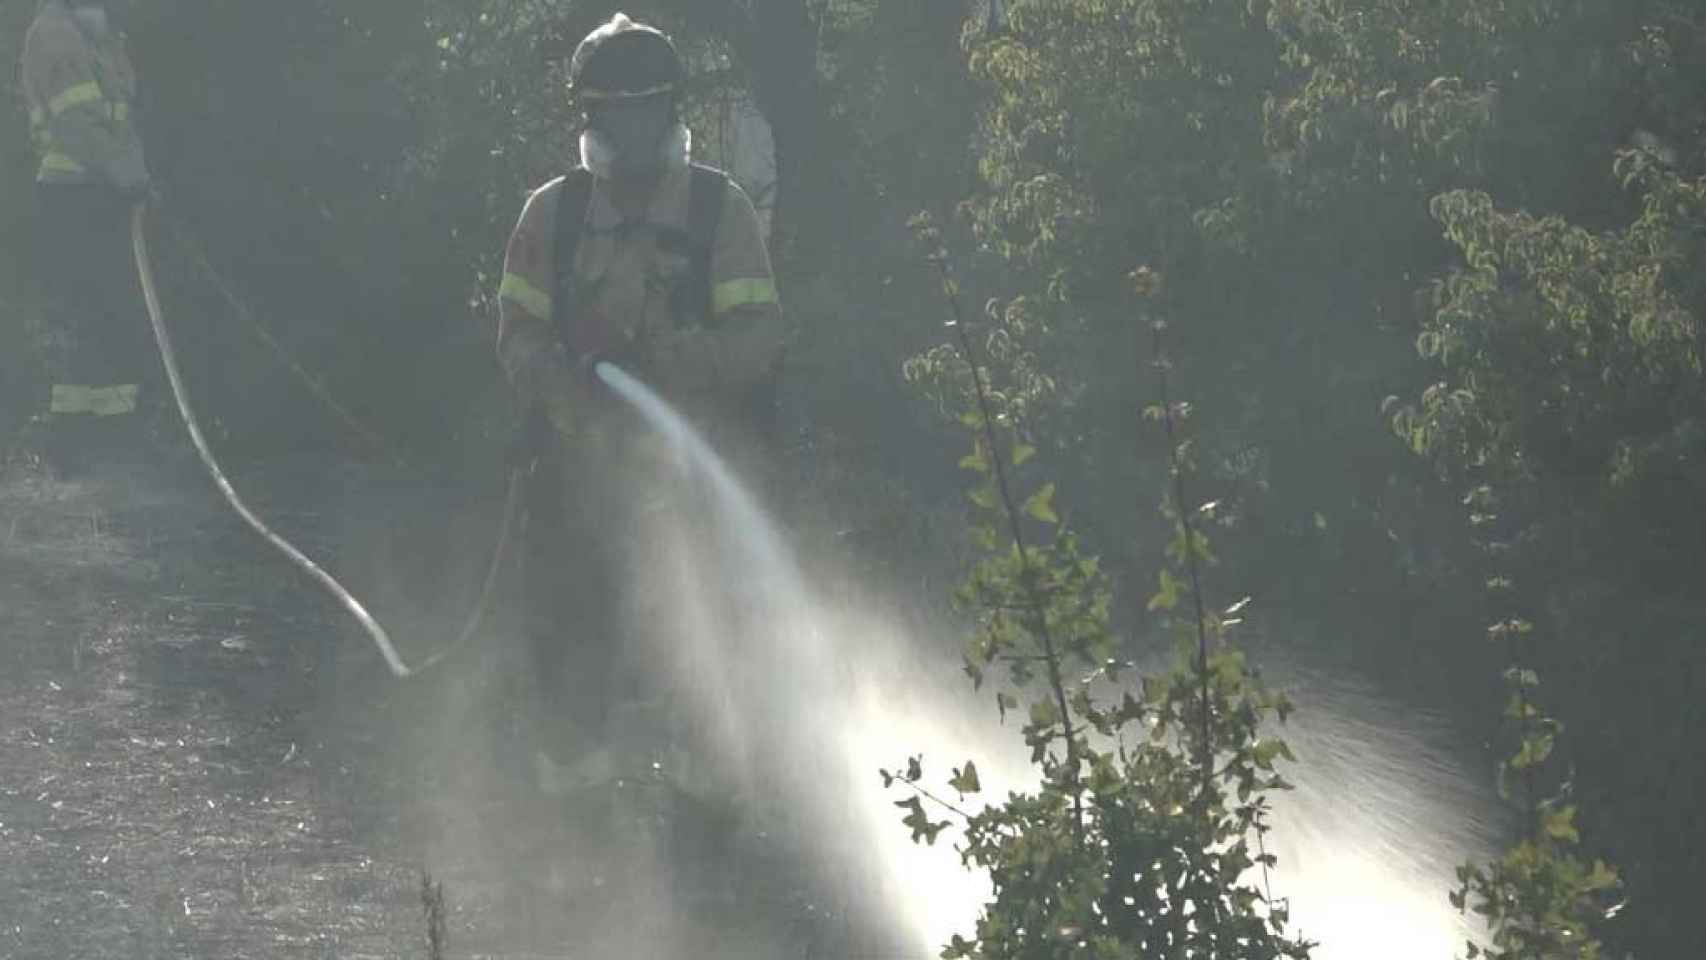 Los bomberos extinguen el incendio de Artesa de Segre, que podría haber sido provocado por una colilla / BOMBERS